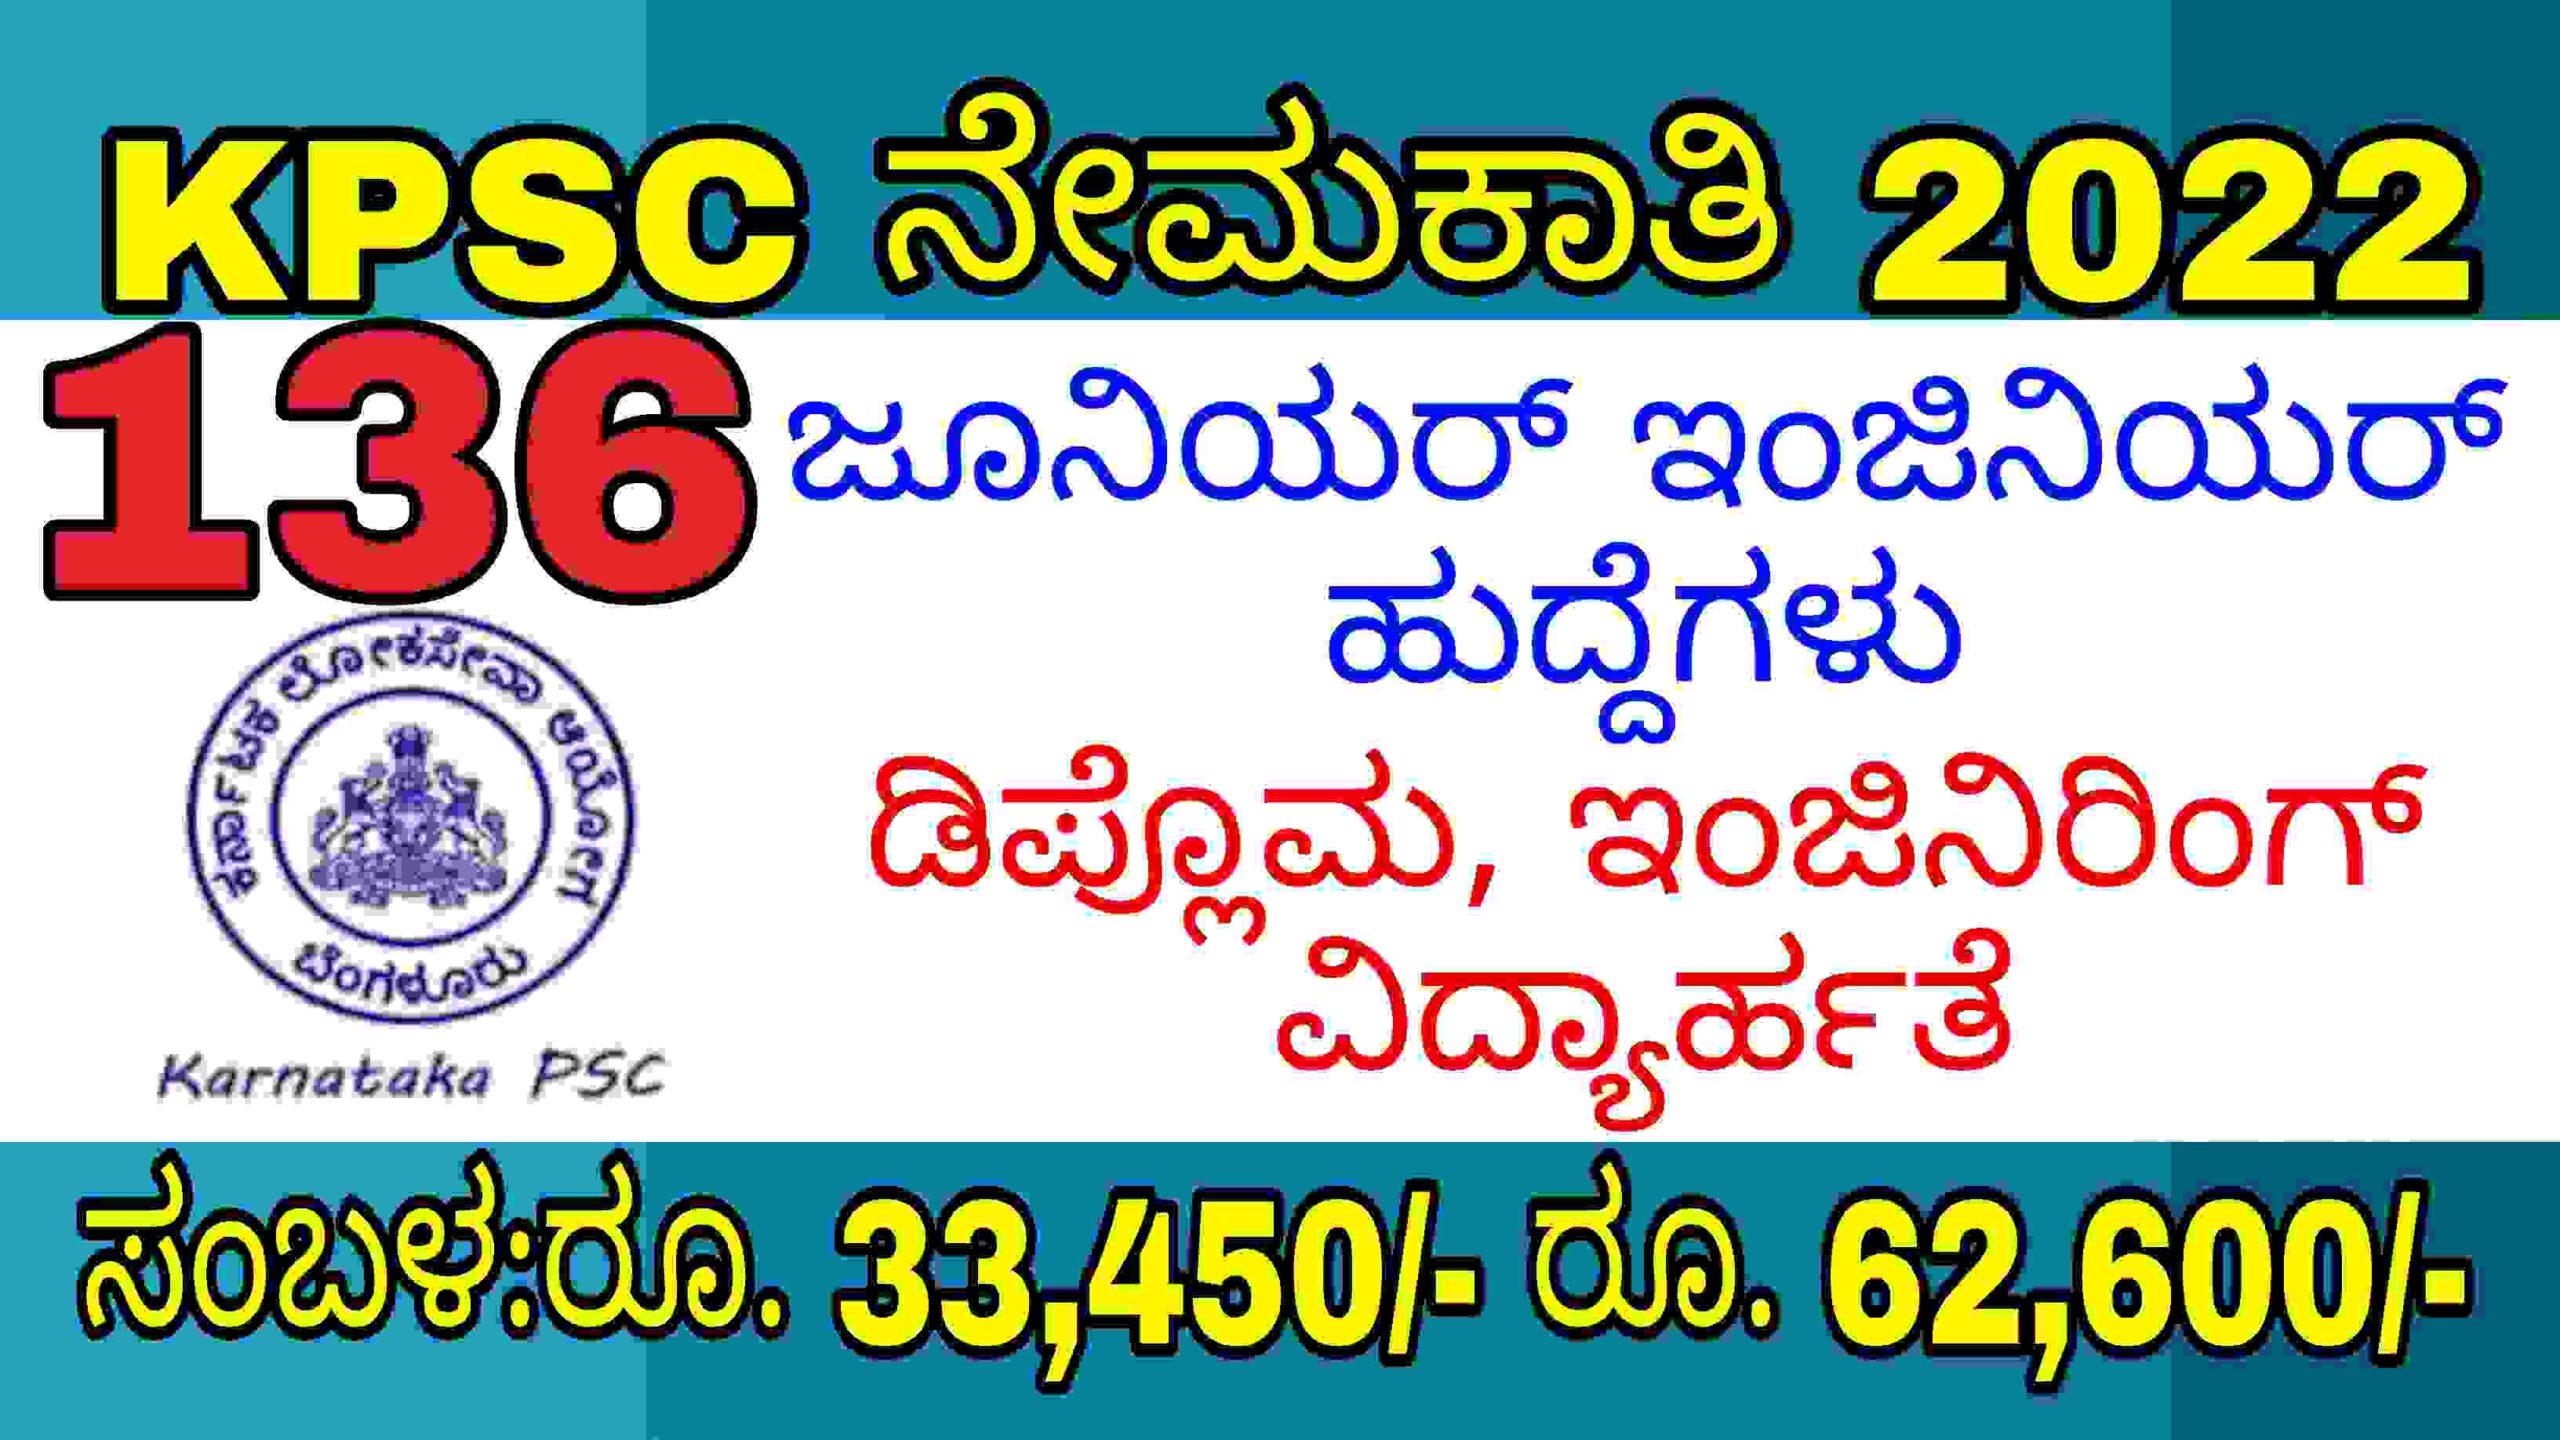 ಕರ್ನಾಟಕ ಲೋಕಸೇವಾ ಆಯೋಗ ನೇಮಕಾತಿ 2022|136 ಜೂನಿಯರ್ ಇಂಜಿನಿಯರ್ ಹುದ್ದೆಗಳು|KPSC Recruitment 2022.